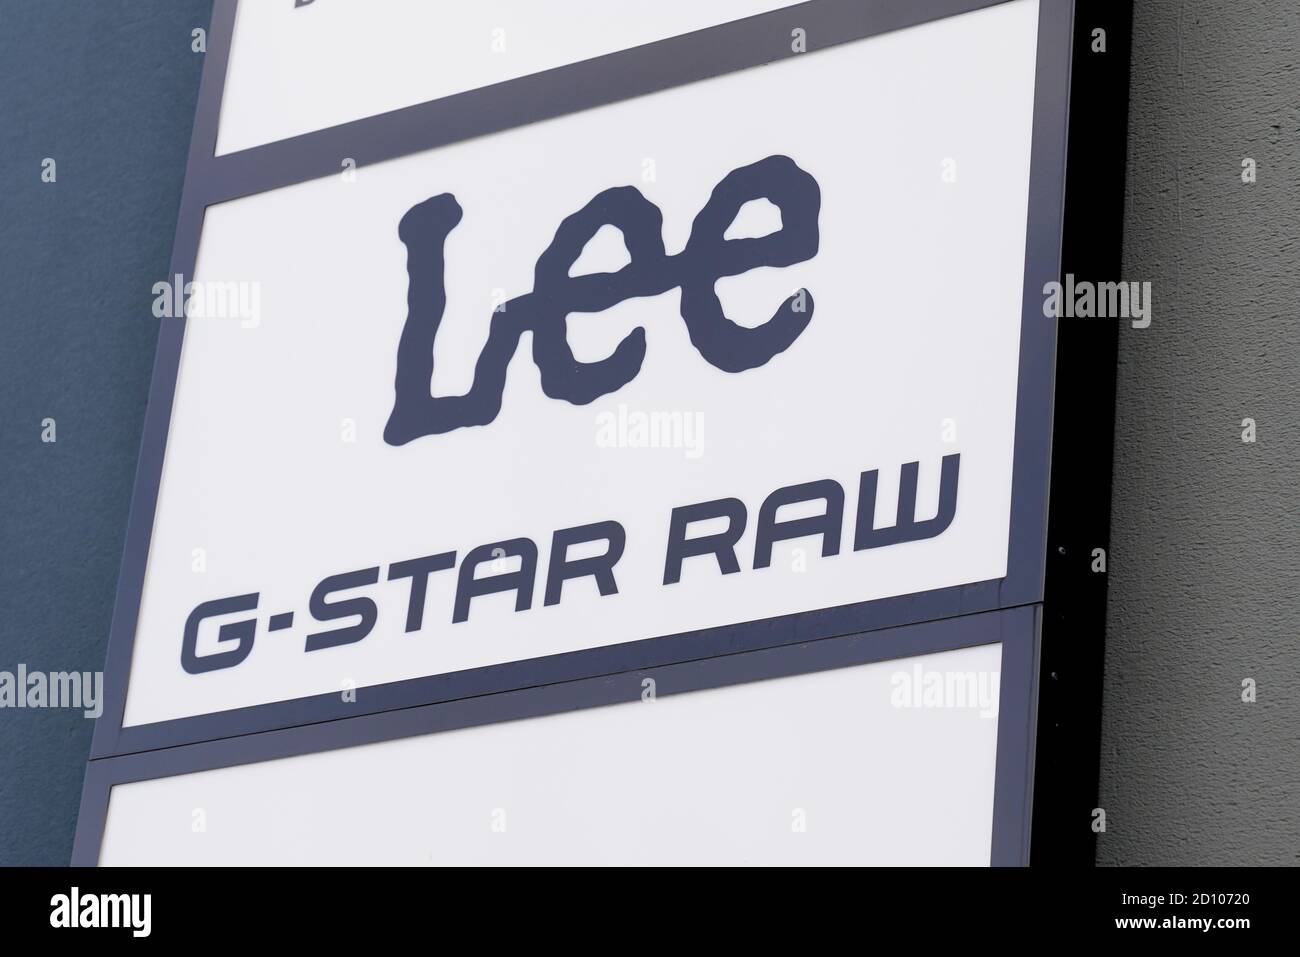 Bordeaux , Aquitaine / France - 10 01 2020 : logo et texte Lee G-STAR RAW  sur Jeans boutique boutique avant de la marque boutique vêtements mode  Photo Stock - Alamy